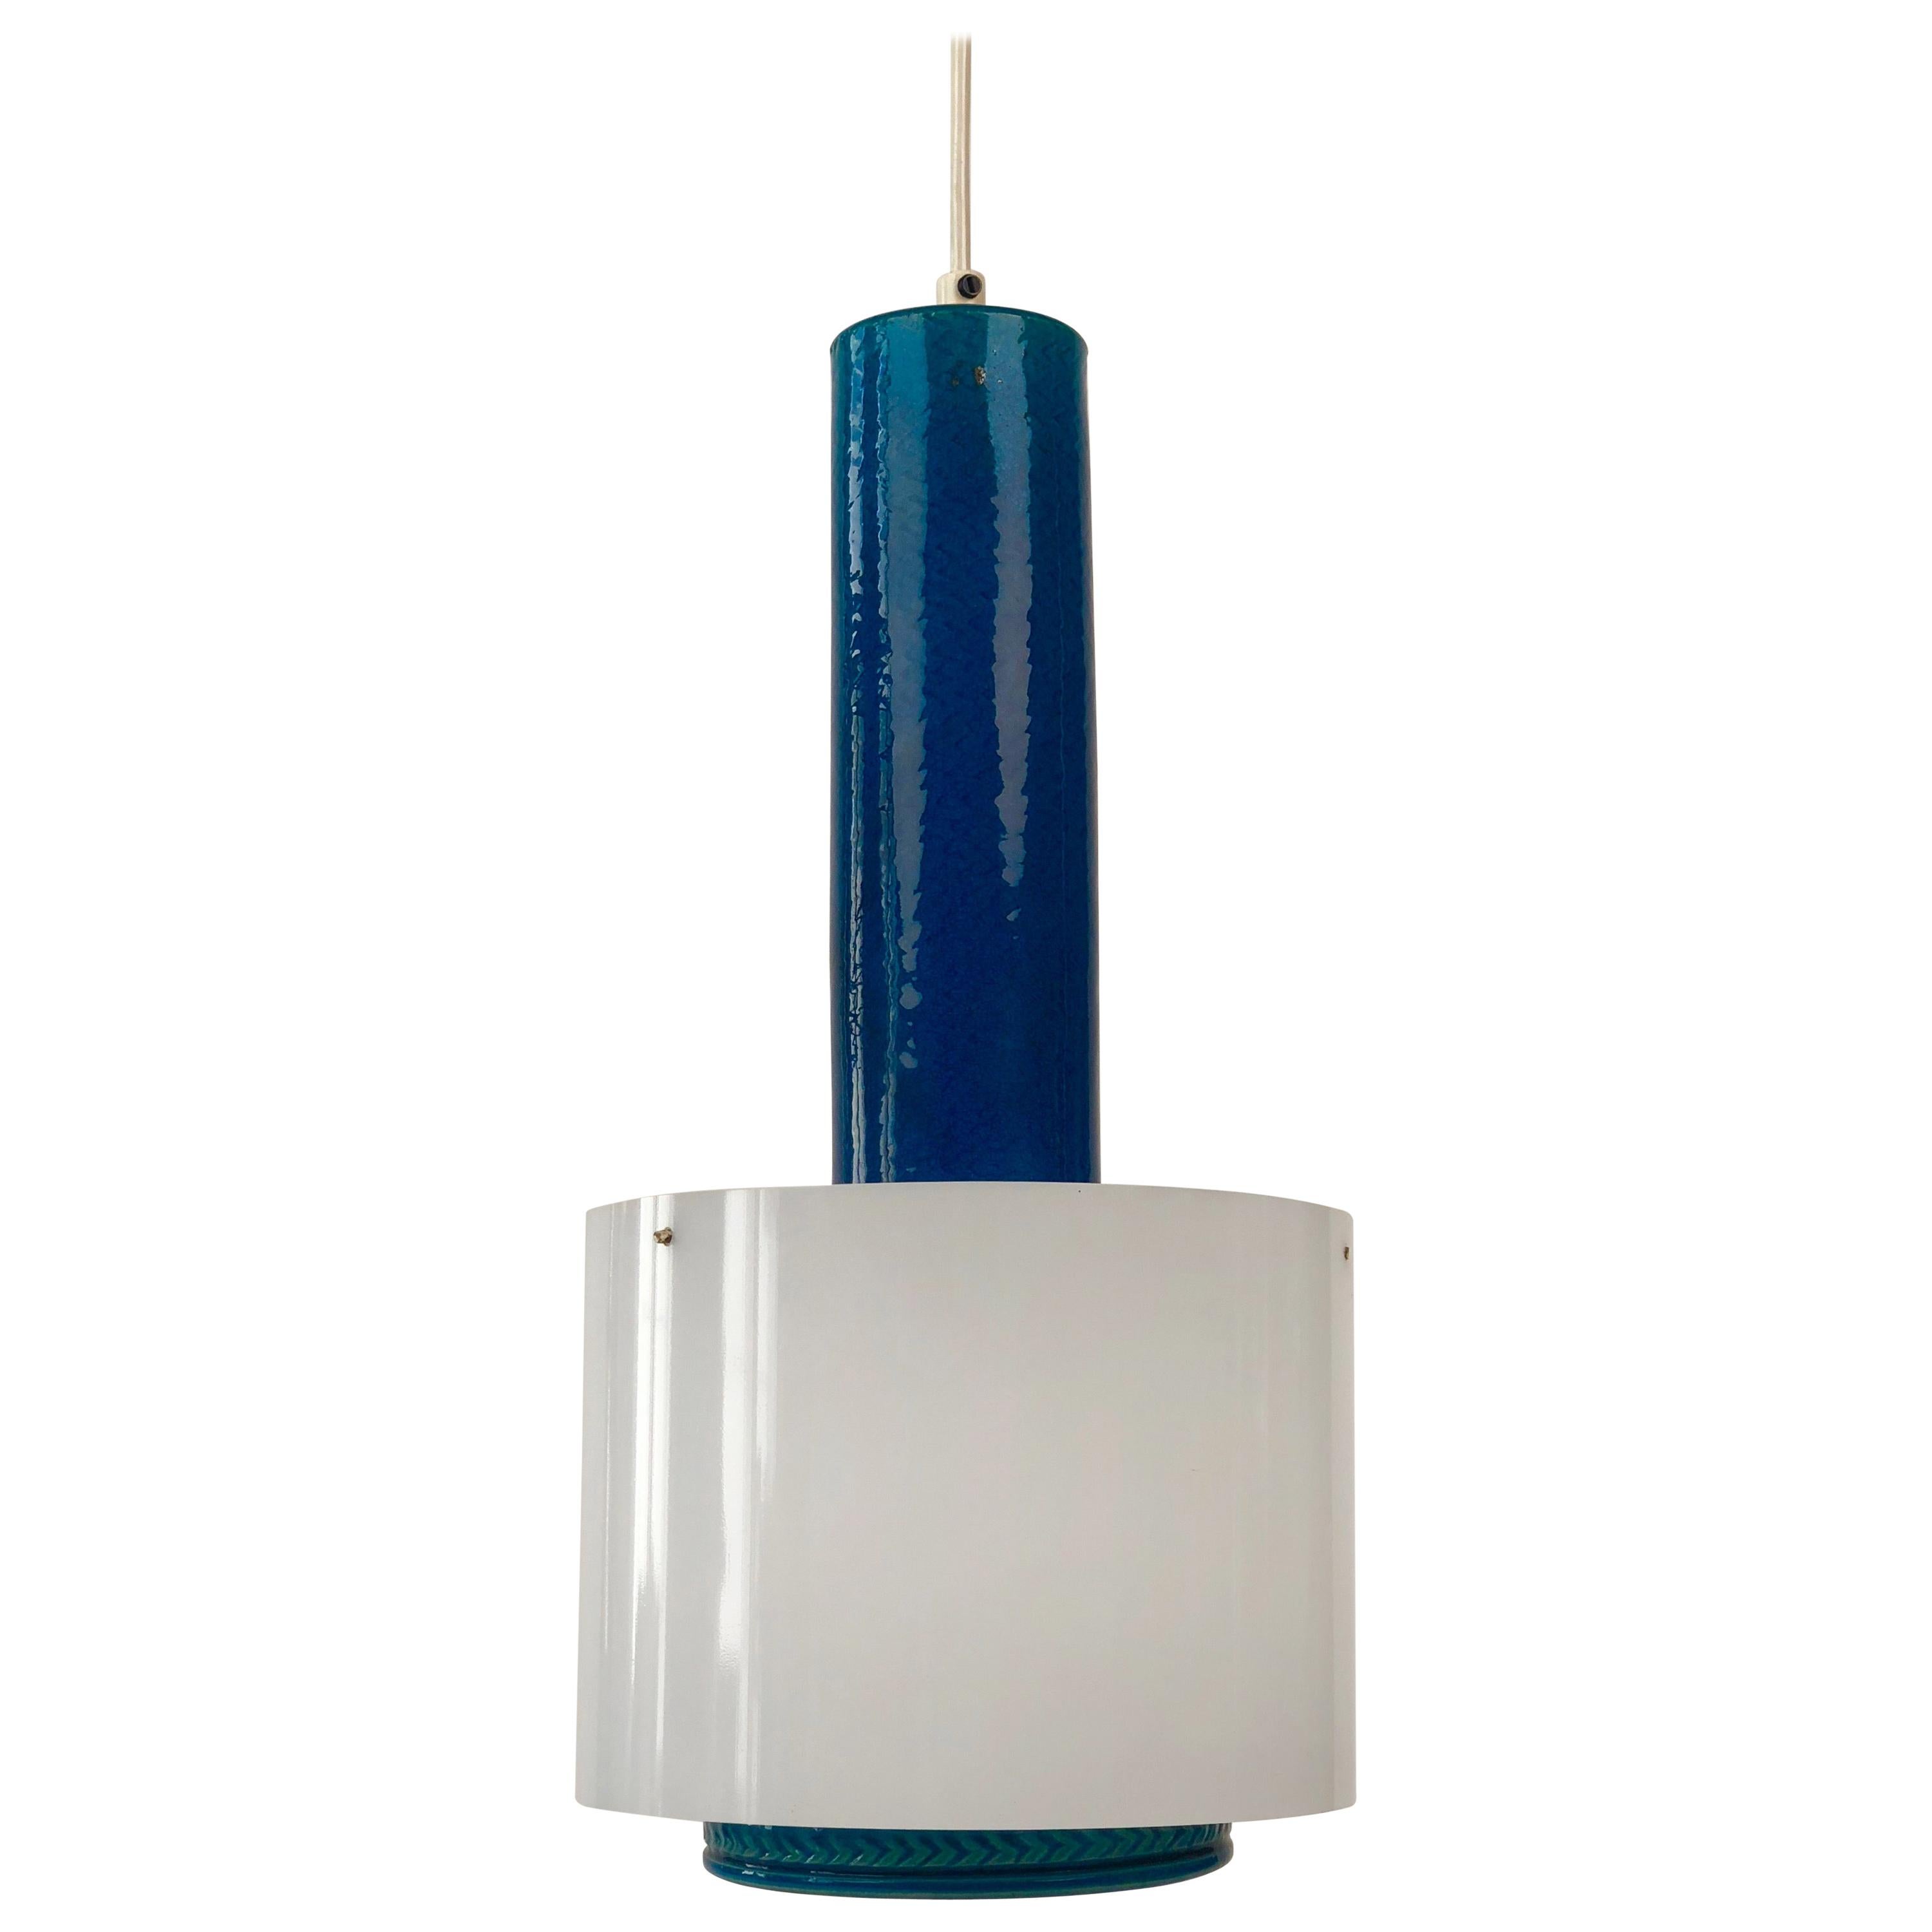 1960s Bitossi Ceramiche Aldo Londi "Rimini Blue" Ceiling Lamp, Italy For Sale